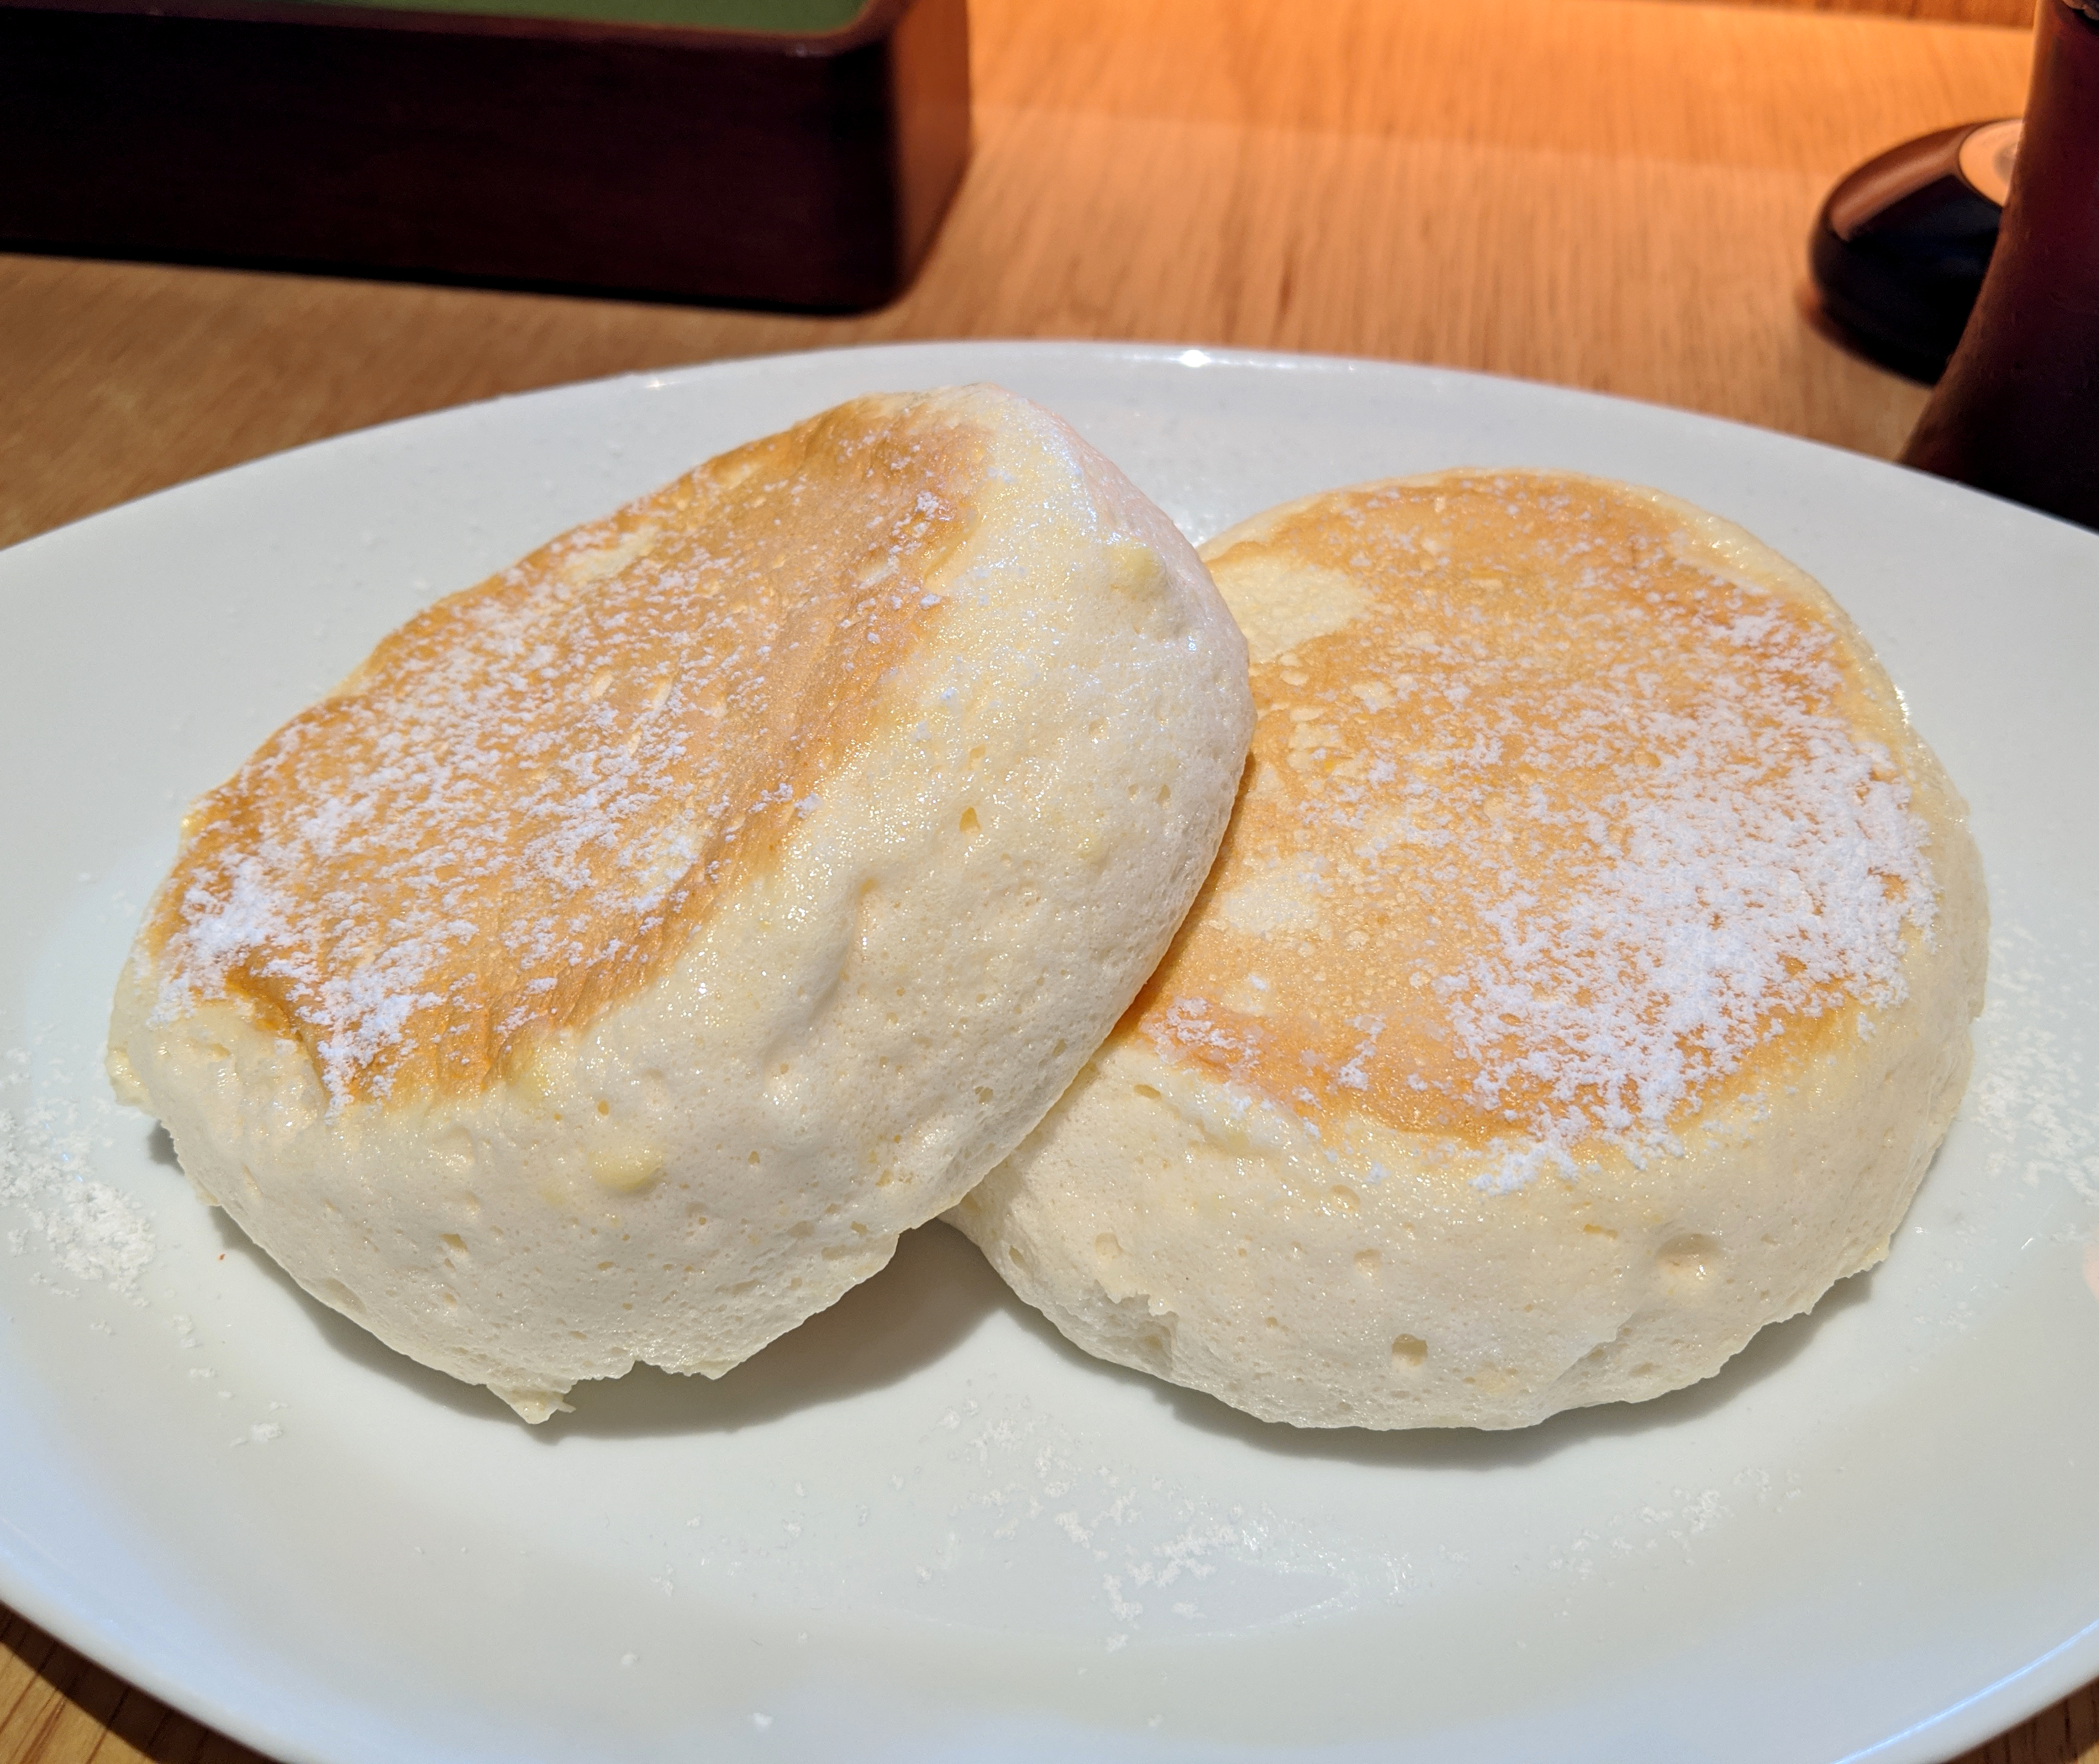 スイーツ むさしの森ダイナーのパンケーキがふわとろすぎて噛めない これはもはや 飲み物 であるッ 東京 新宿中央公園 Shuknova ロケットニュース24